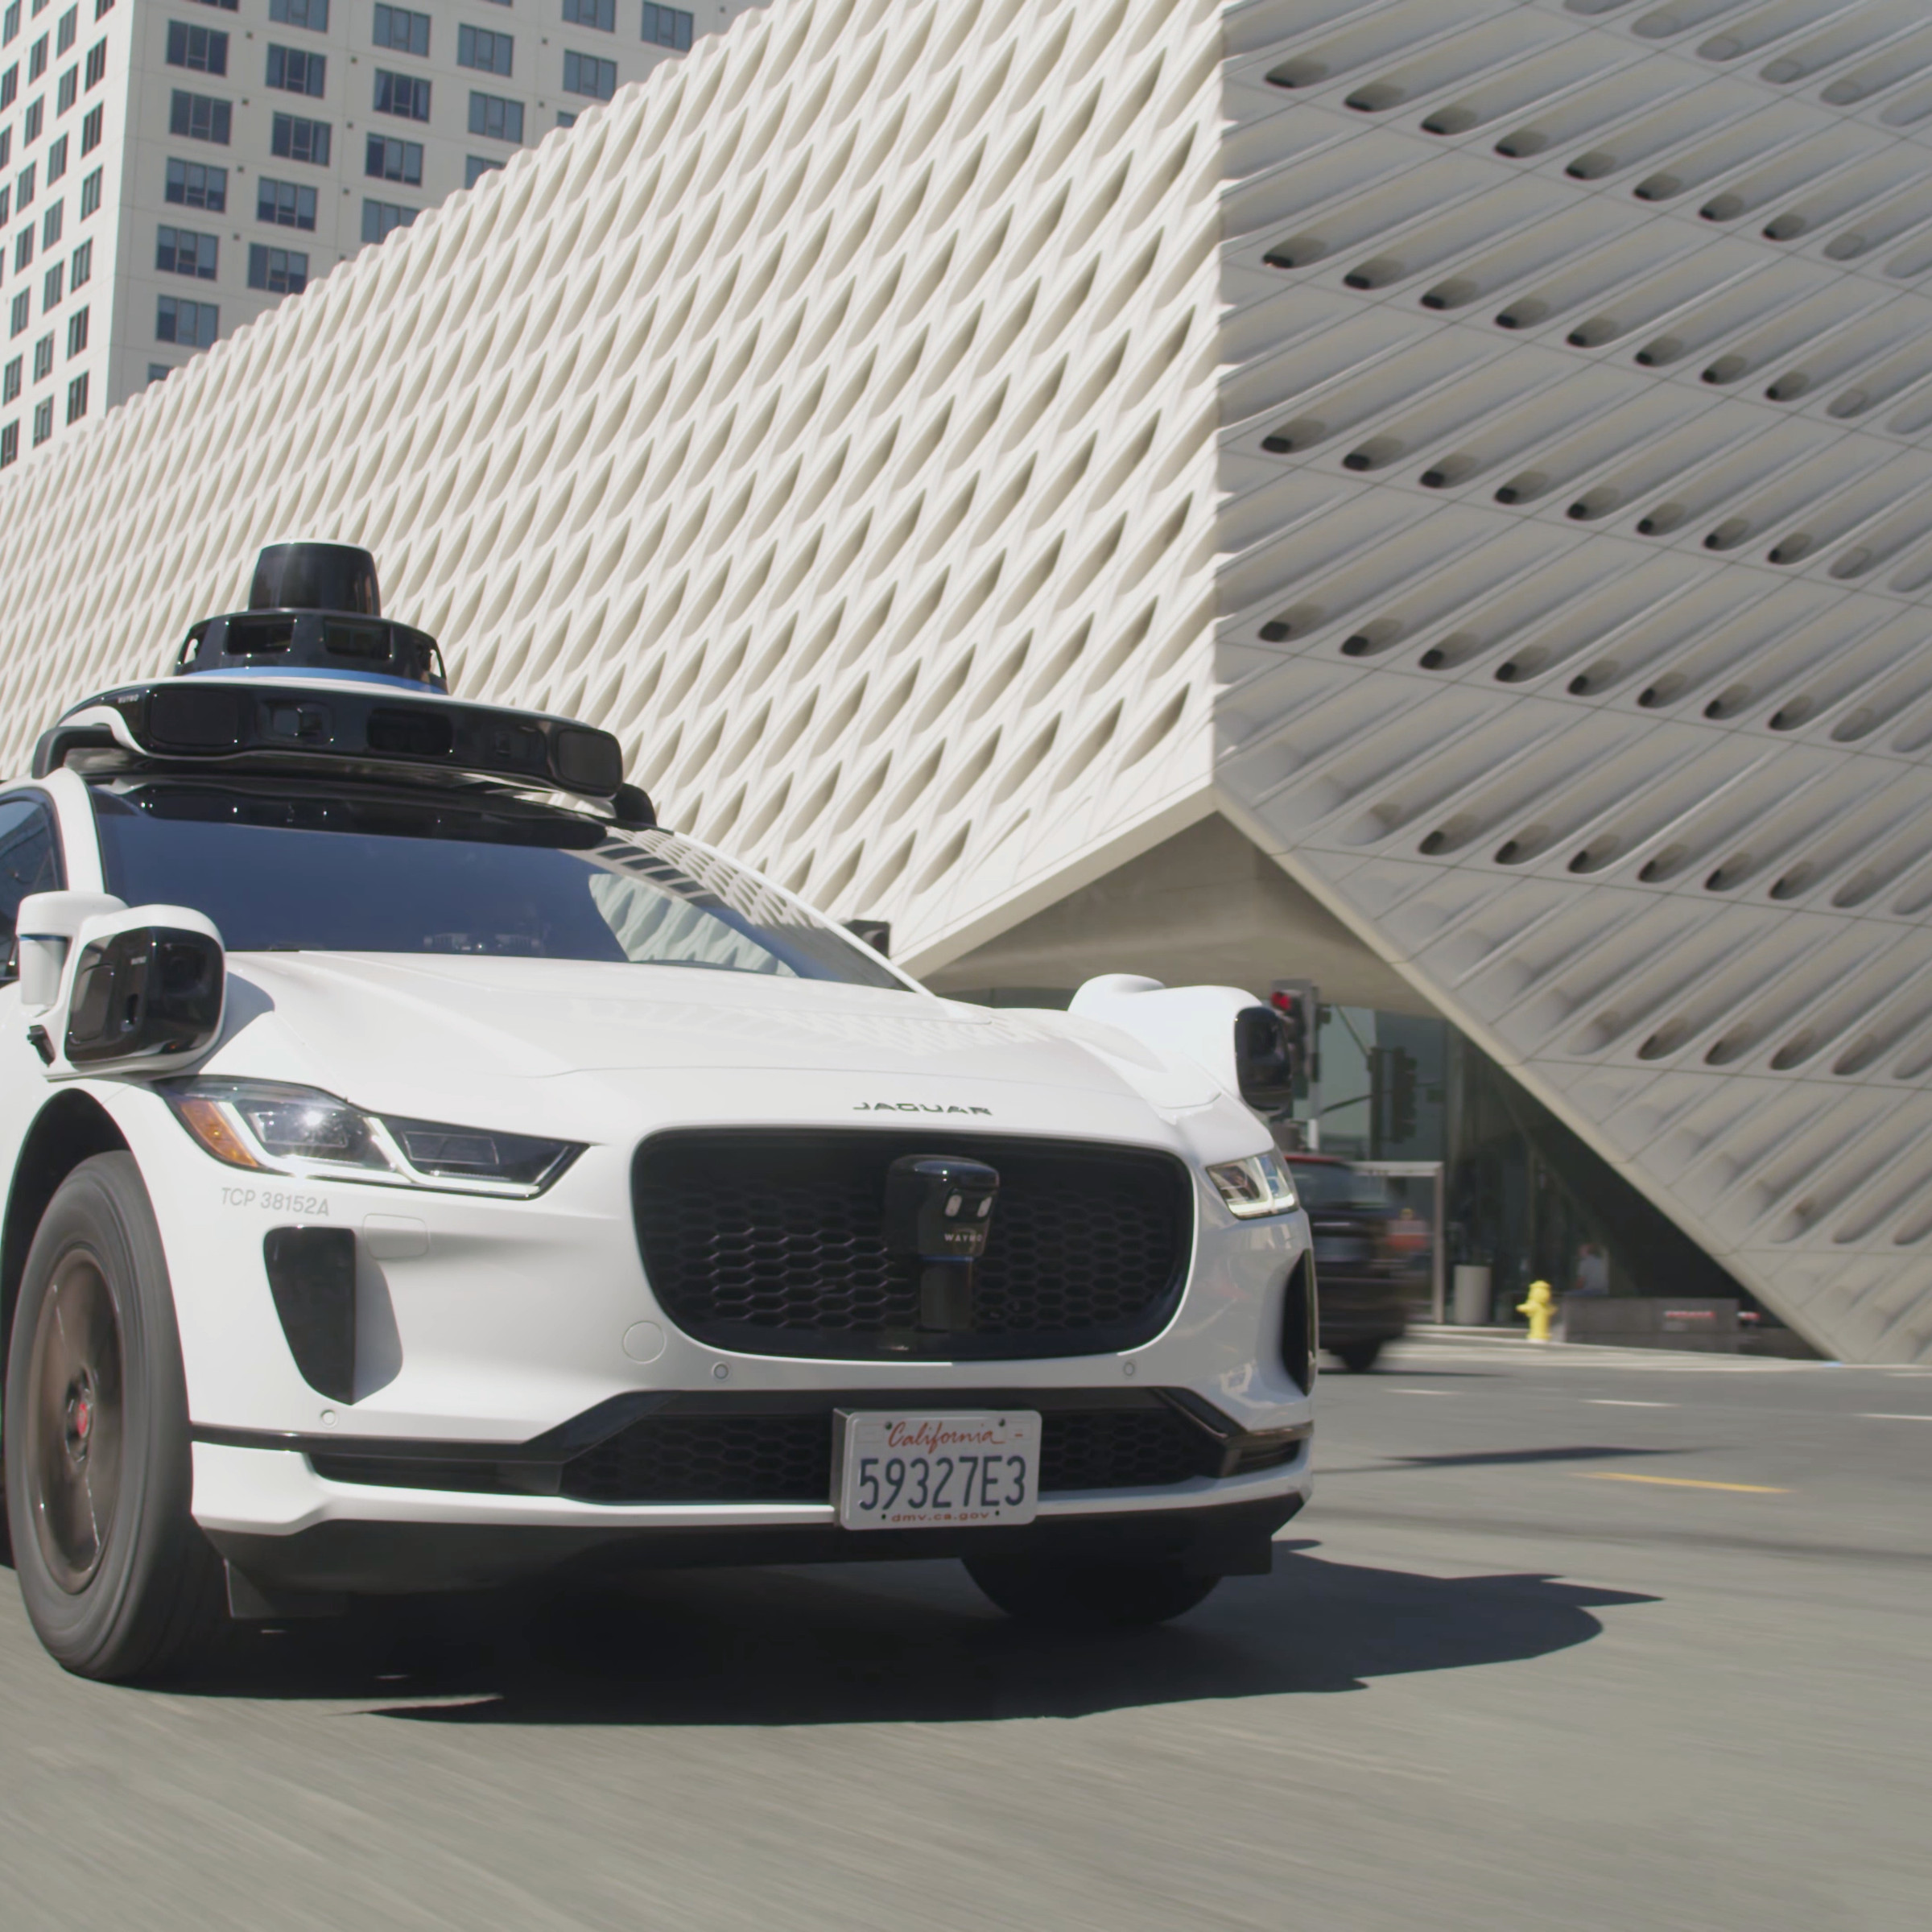 Waymo autonomous vehicle in Los Angeles